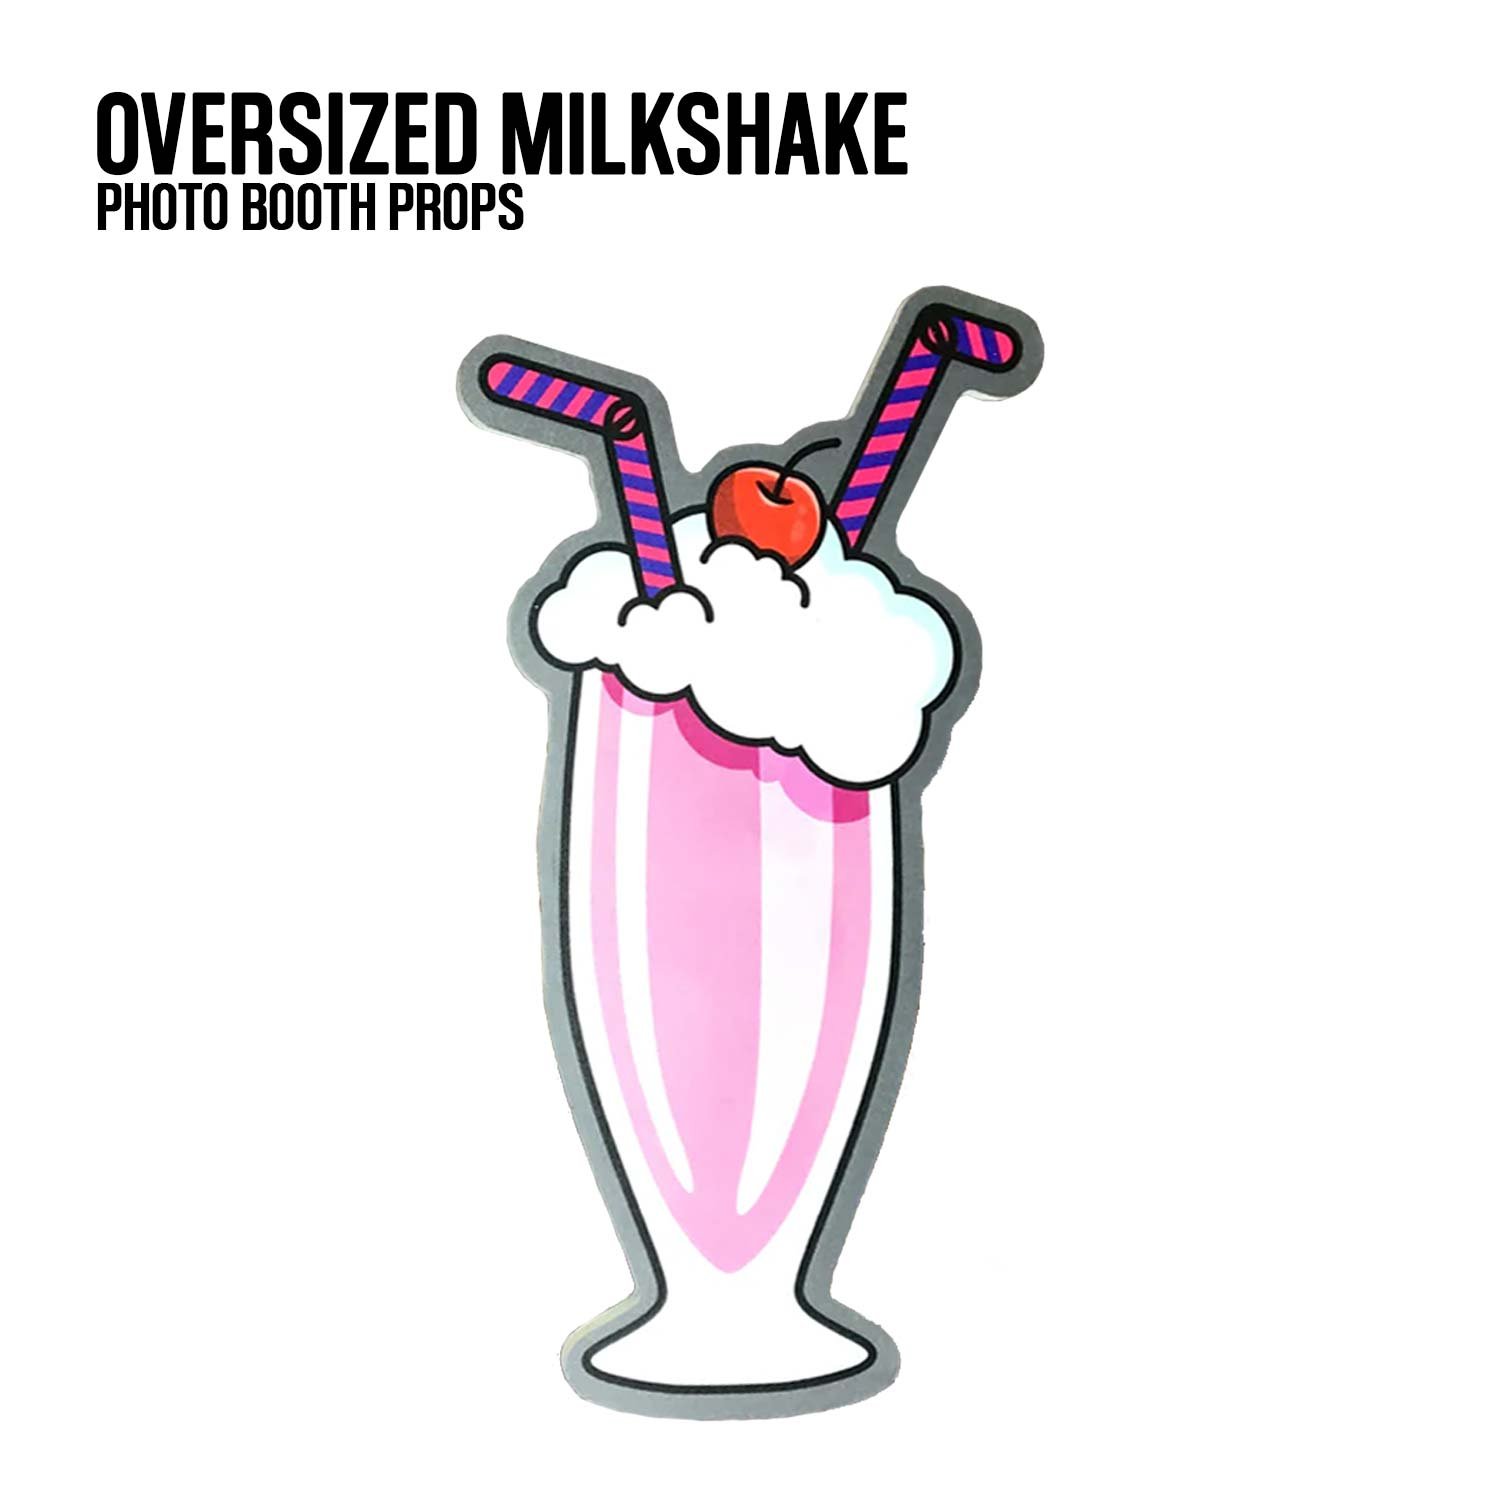 Oversized-milkshake.jpg